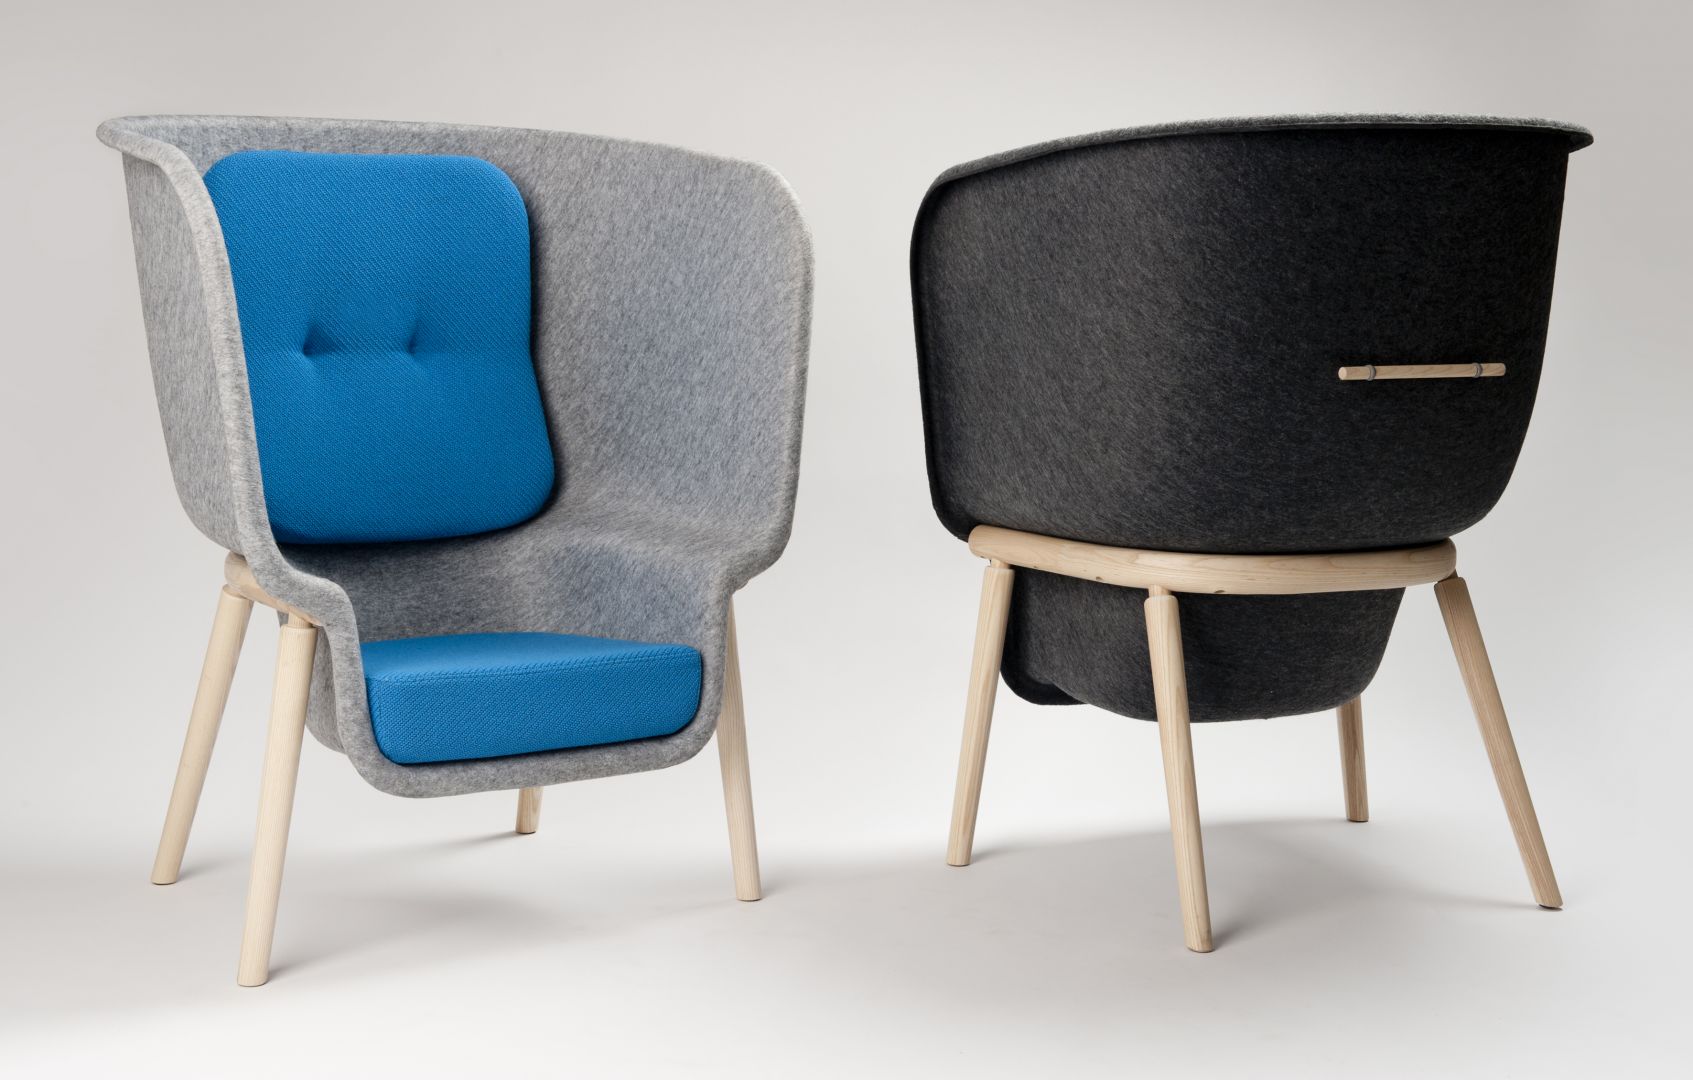 Fotele Pod idealnie dopasowują się do ciała użytkownika dając mu wiele przestrzeni i komfortu. Fot. Archiwum projektanta